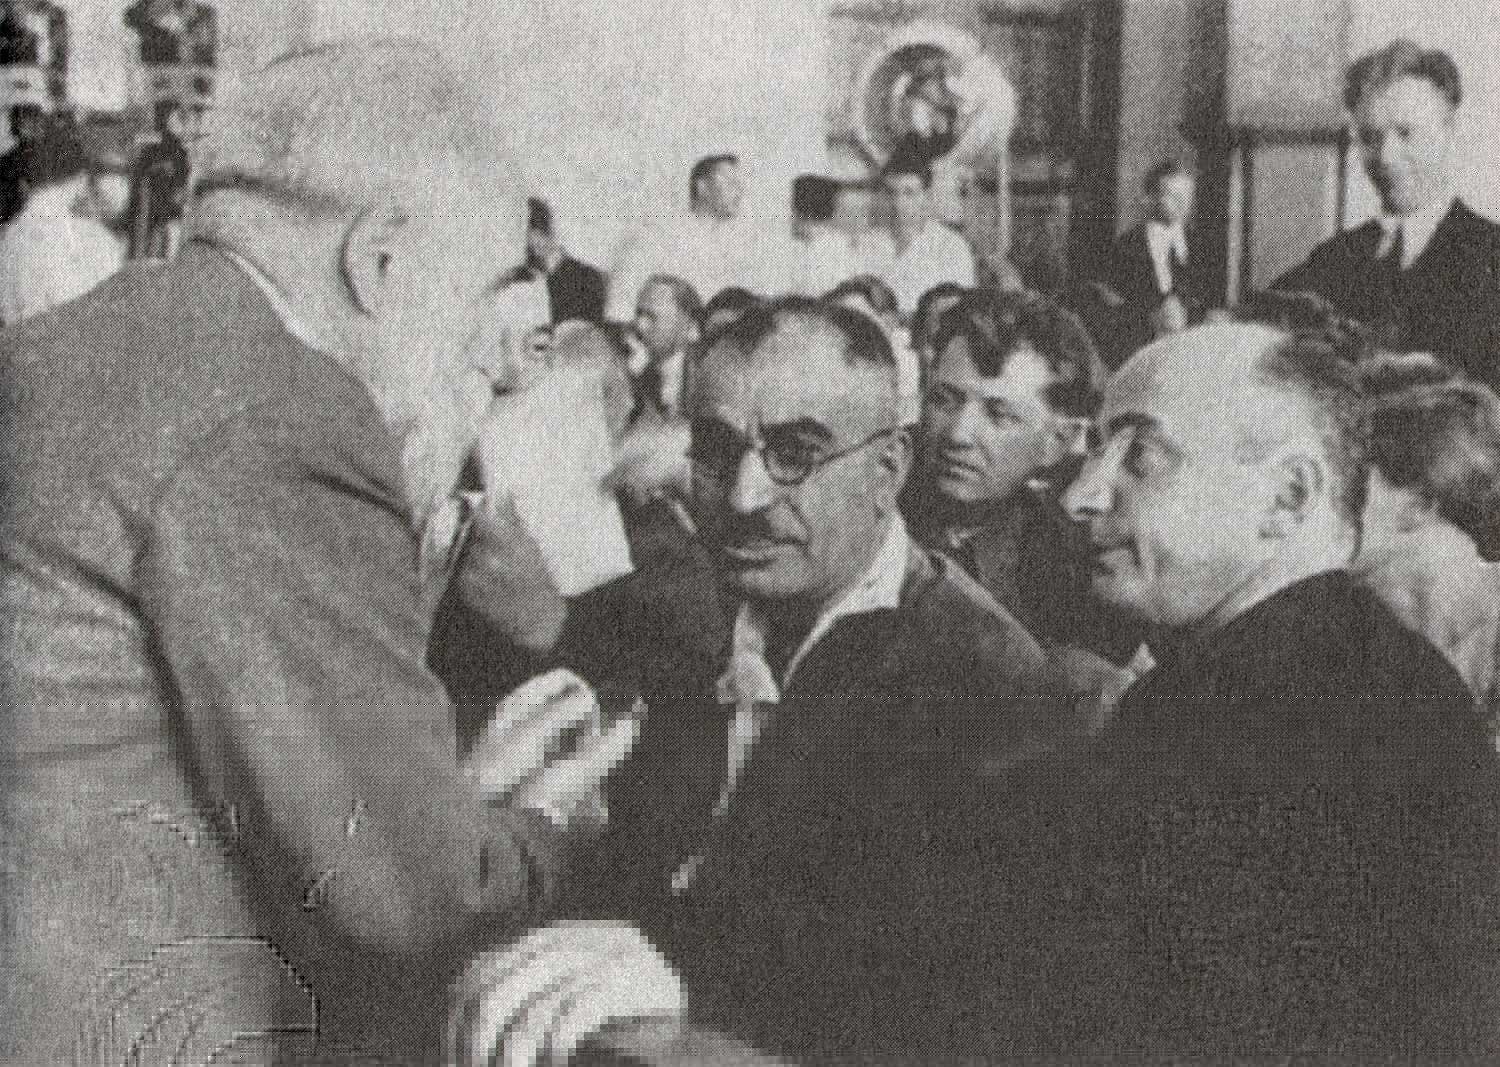 Слева направо: Филипп Махарадзе, Мир Джафар Багиров и Лаврентий Берия, 1935 год